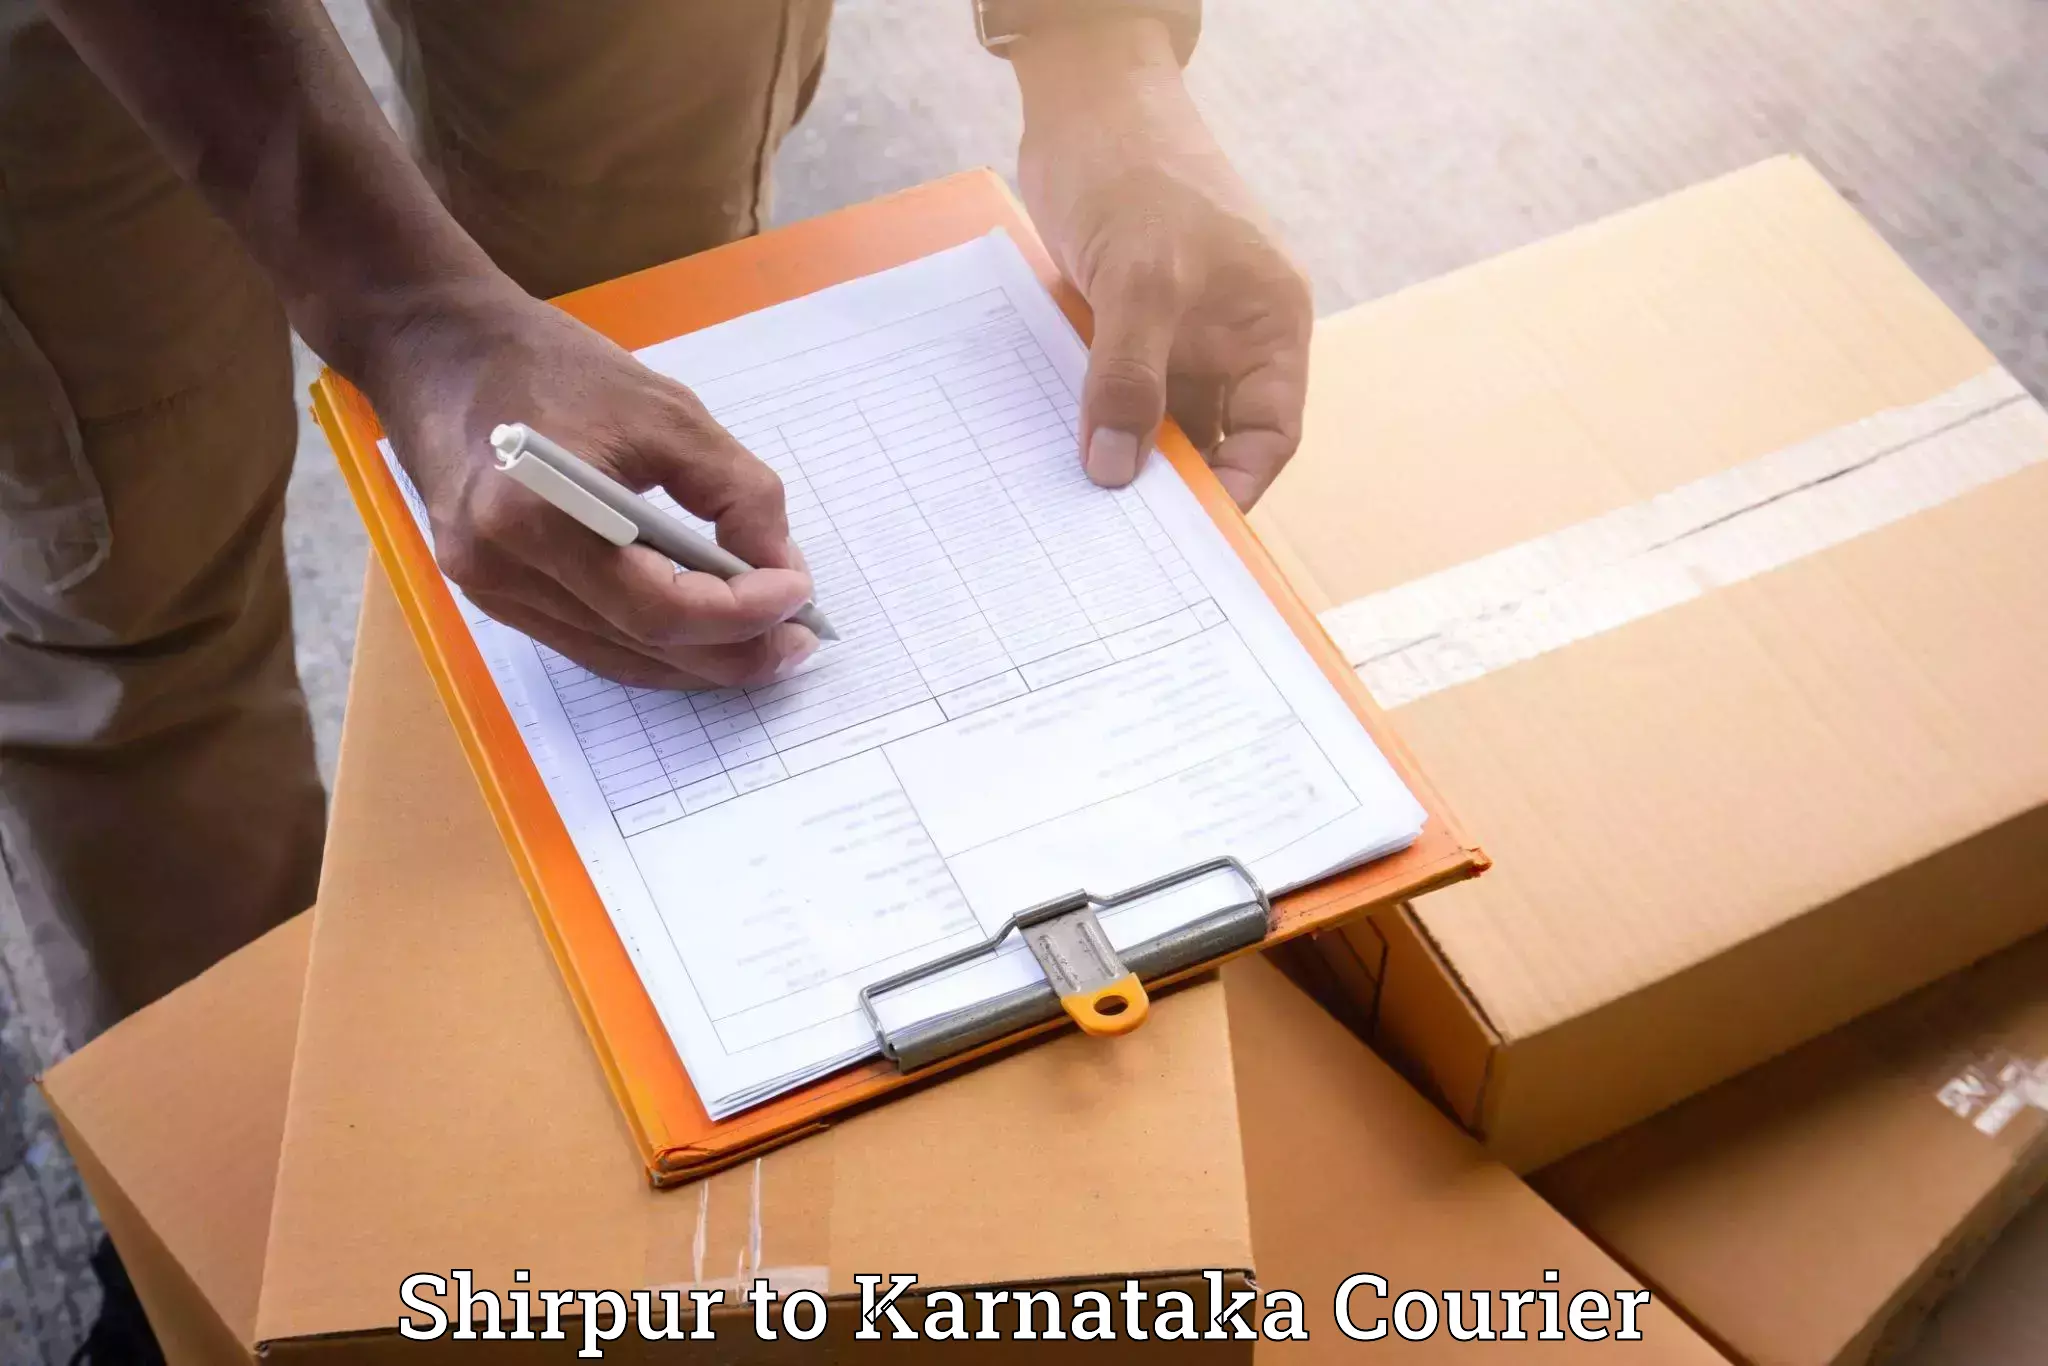 Furniture transport specialists Shirpur to Krishnarajanagara